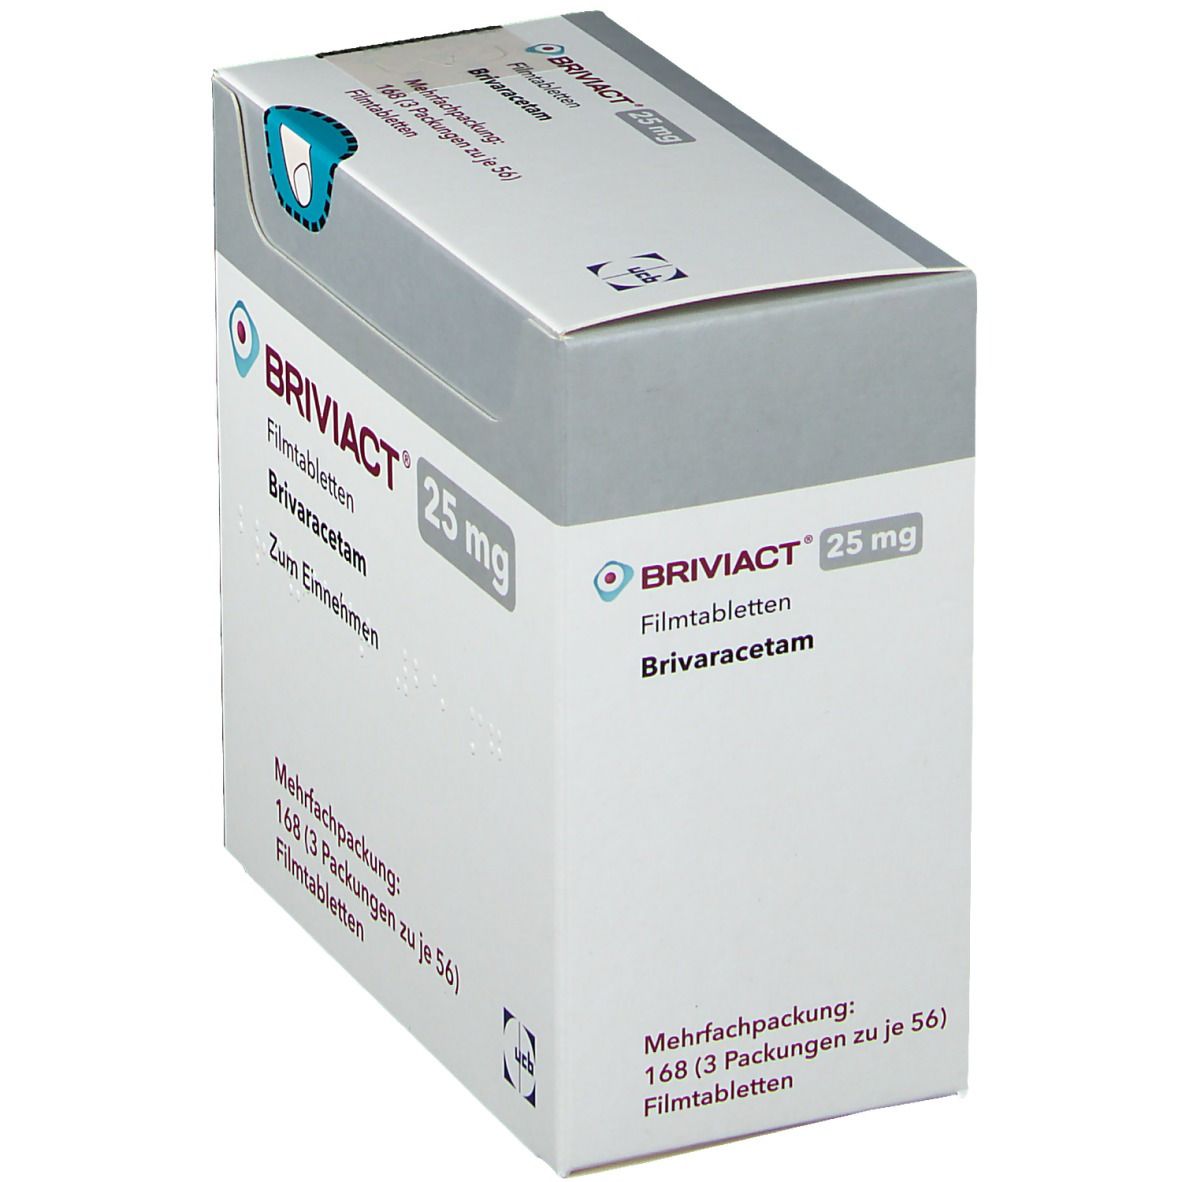 BRIVIACT® 25 mg